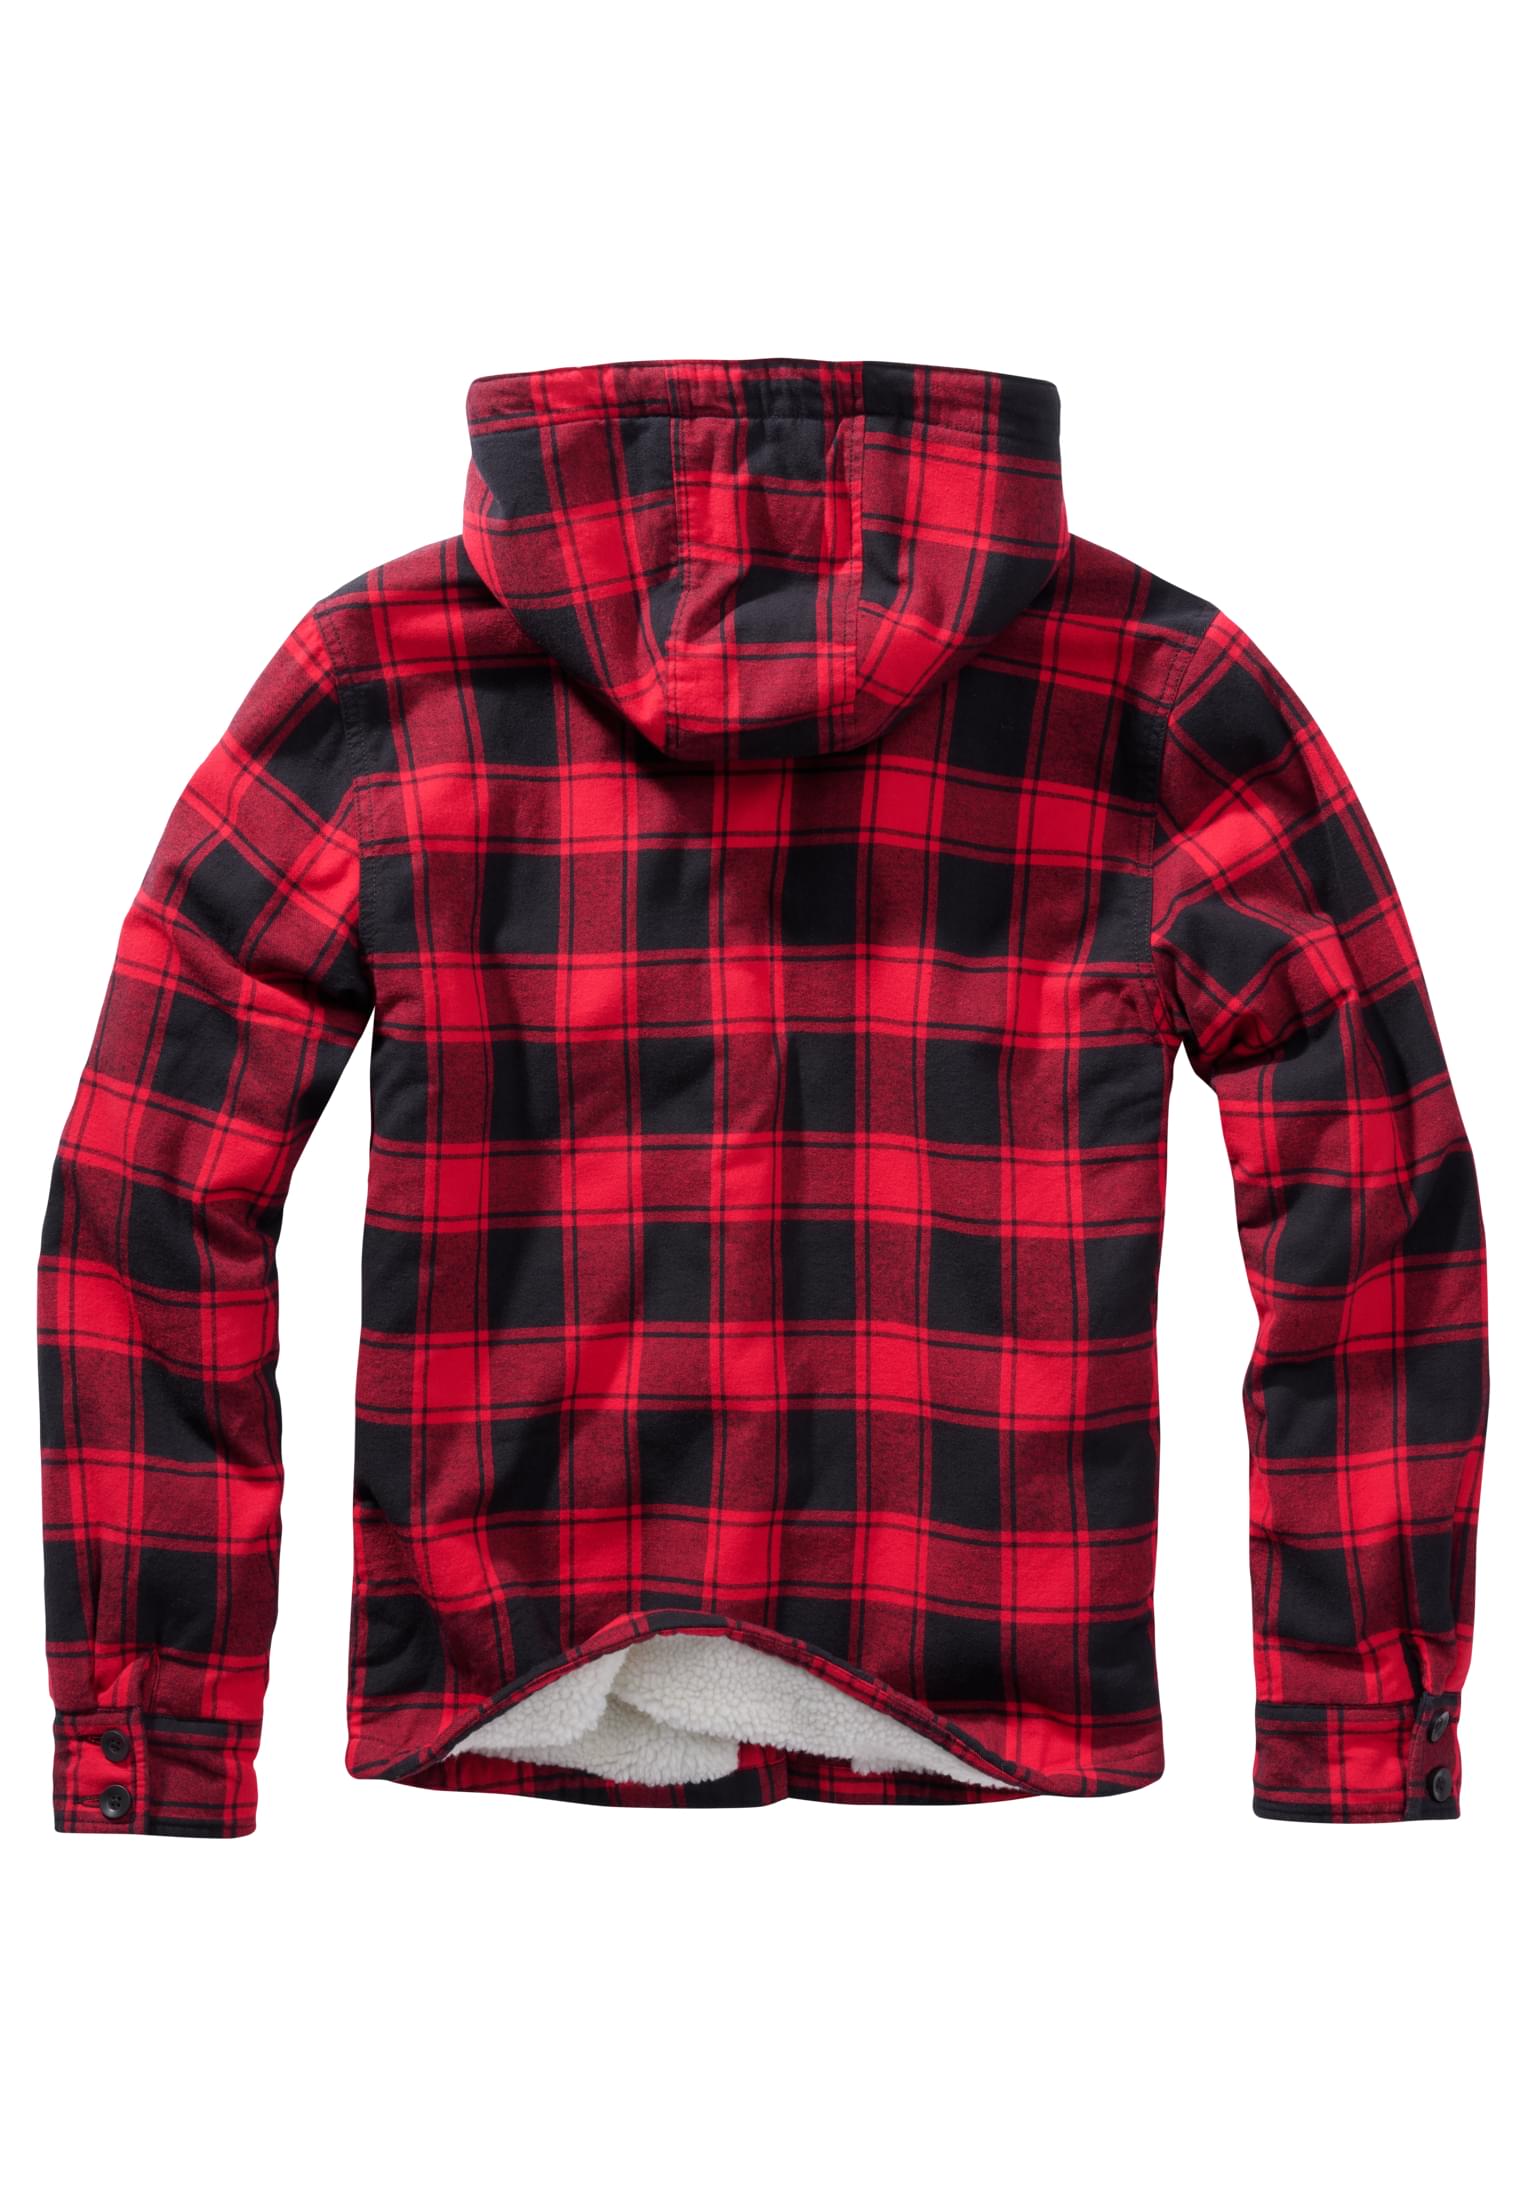 Jacken Lumberjacket Hooded in Farbe red/black